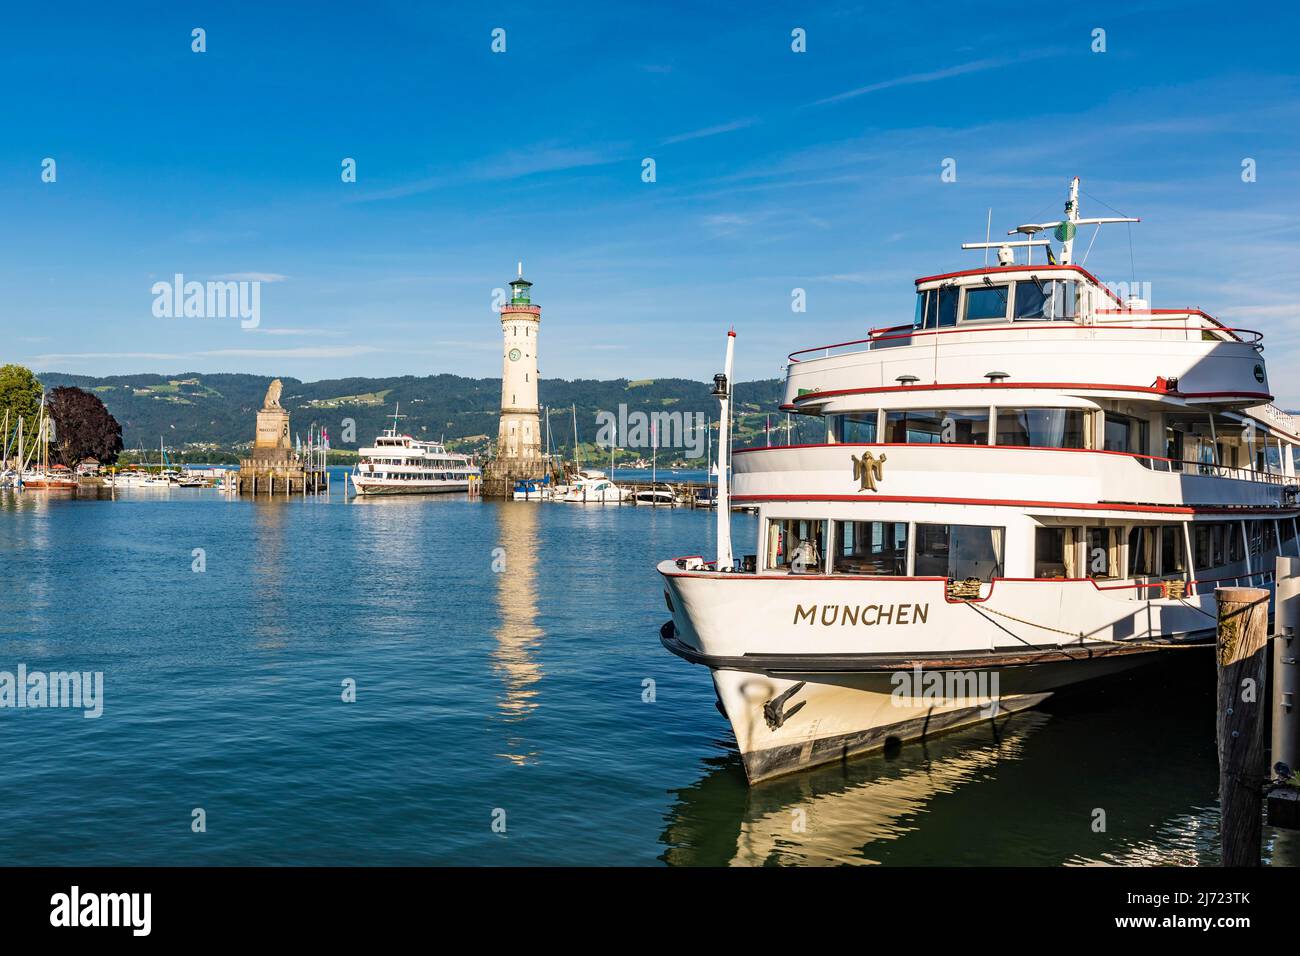 Ausflugsschiff Muenchen im Hafen, Bayerischer Loewe, Leuchtturm, Lindau, Bayern, Deutschland Stock Photo